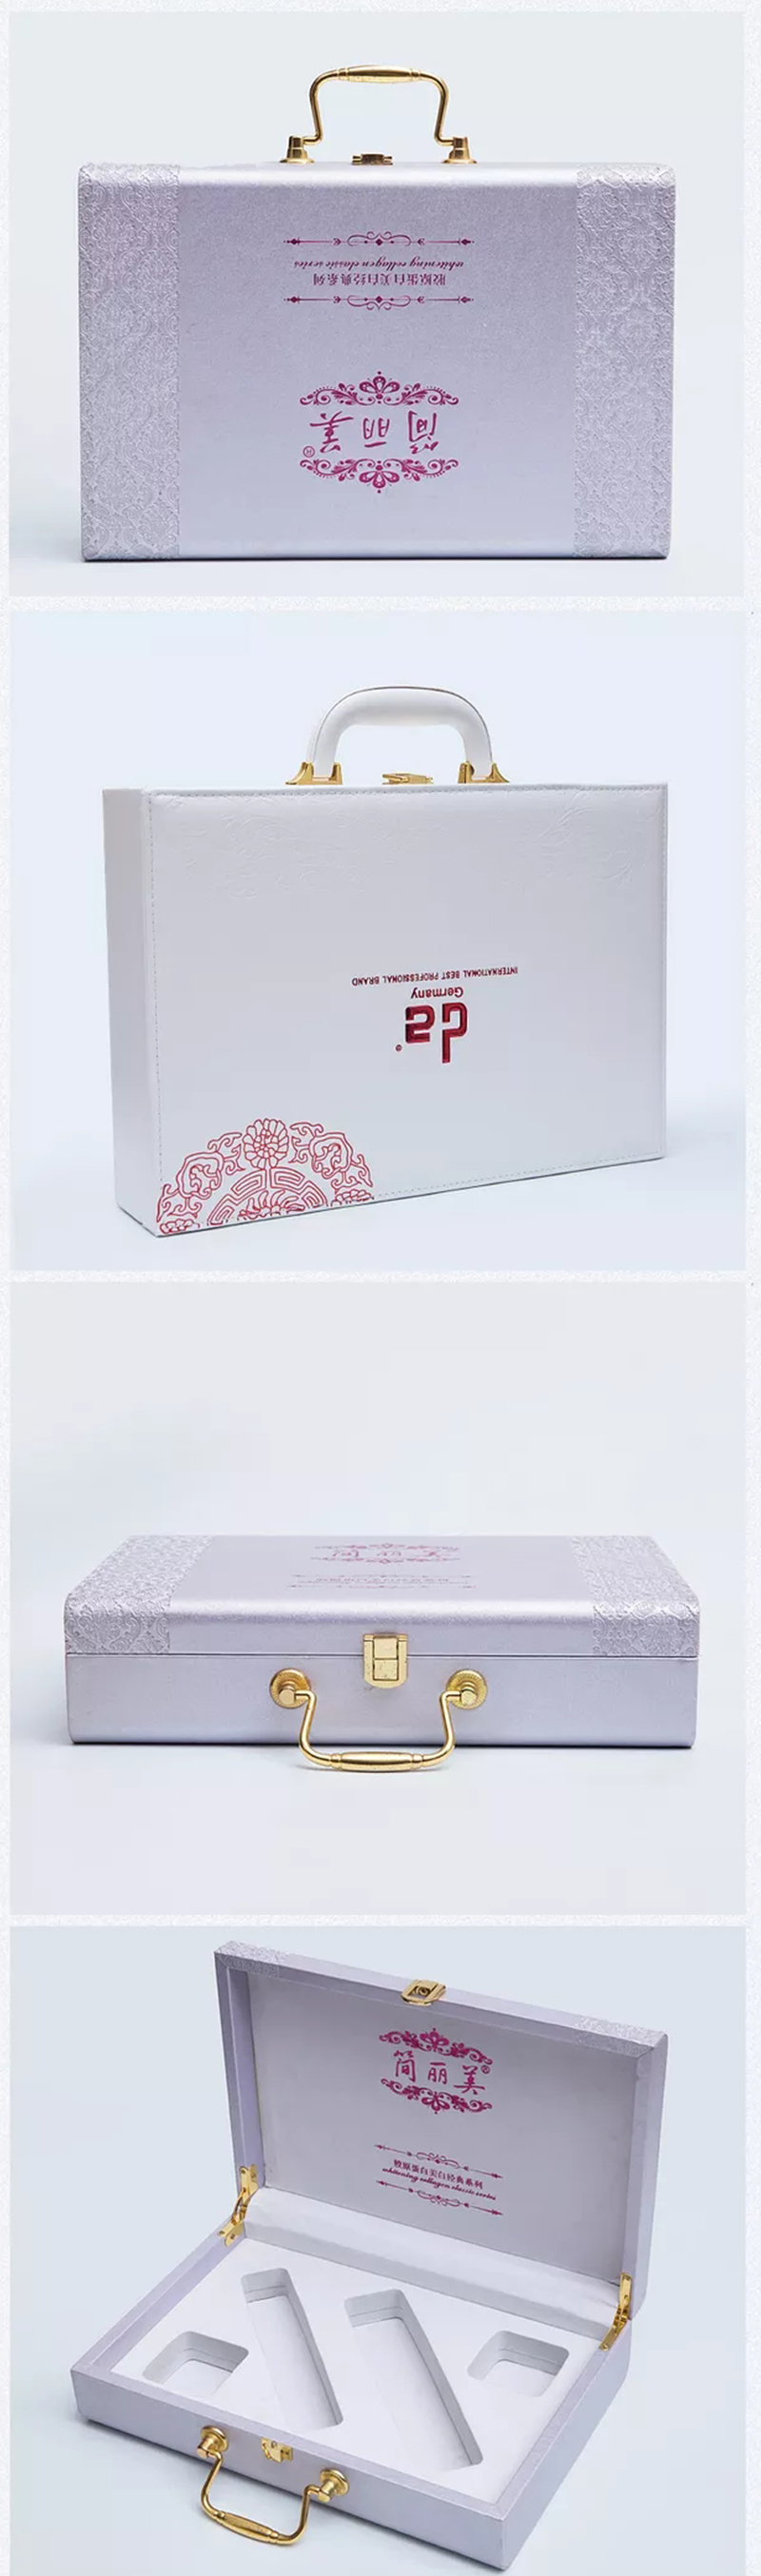 化妝品禮盒皮盒設計制作